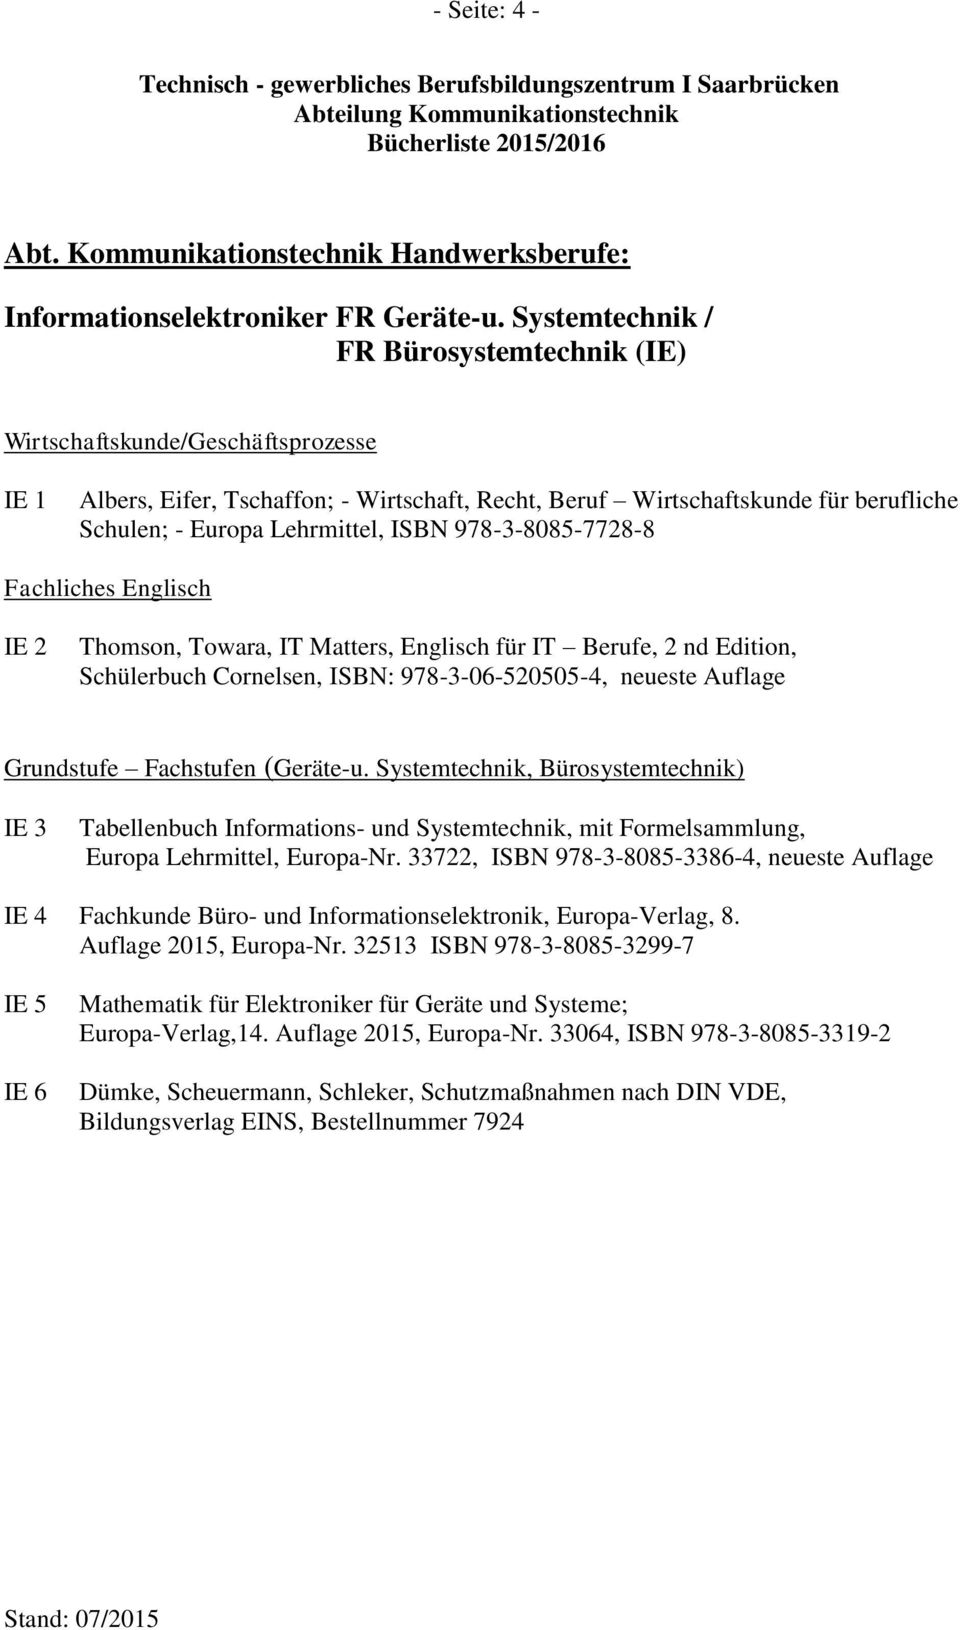 ISBN 978-3-8085-7728-8 Fachliches Englisch IE 2 Thomson, Towara, IT Matters, Englisch für IT Berufe, 2 nd Edition, Schülerbuch Cornelsen, ISBN: 978-3-06-520505-4, neueste Auflage Grundstufe